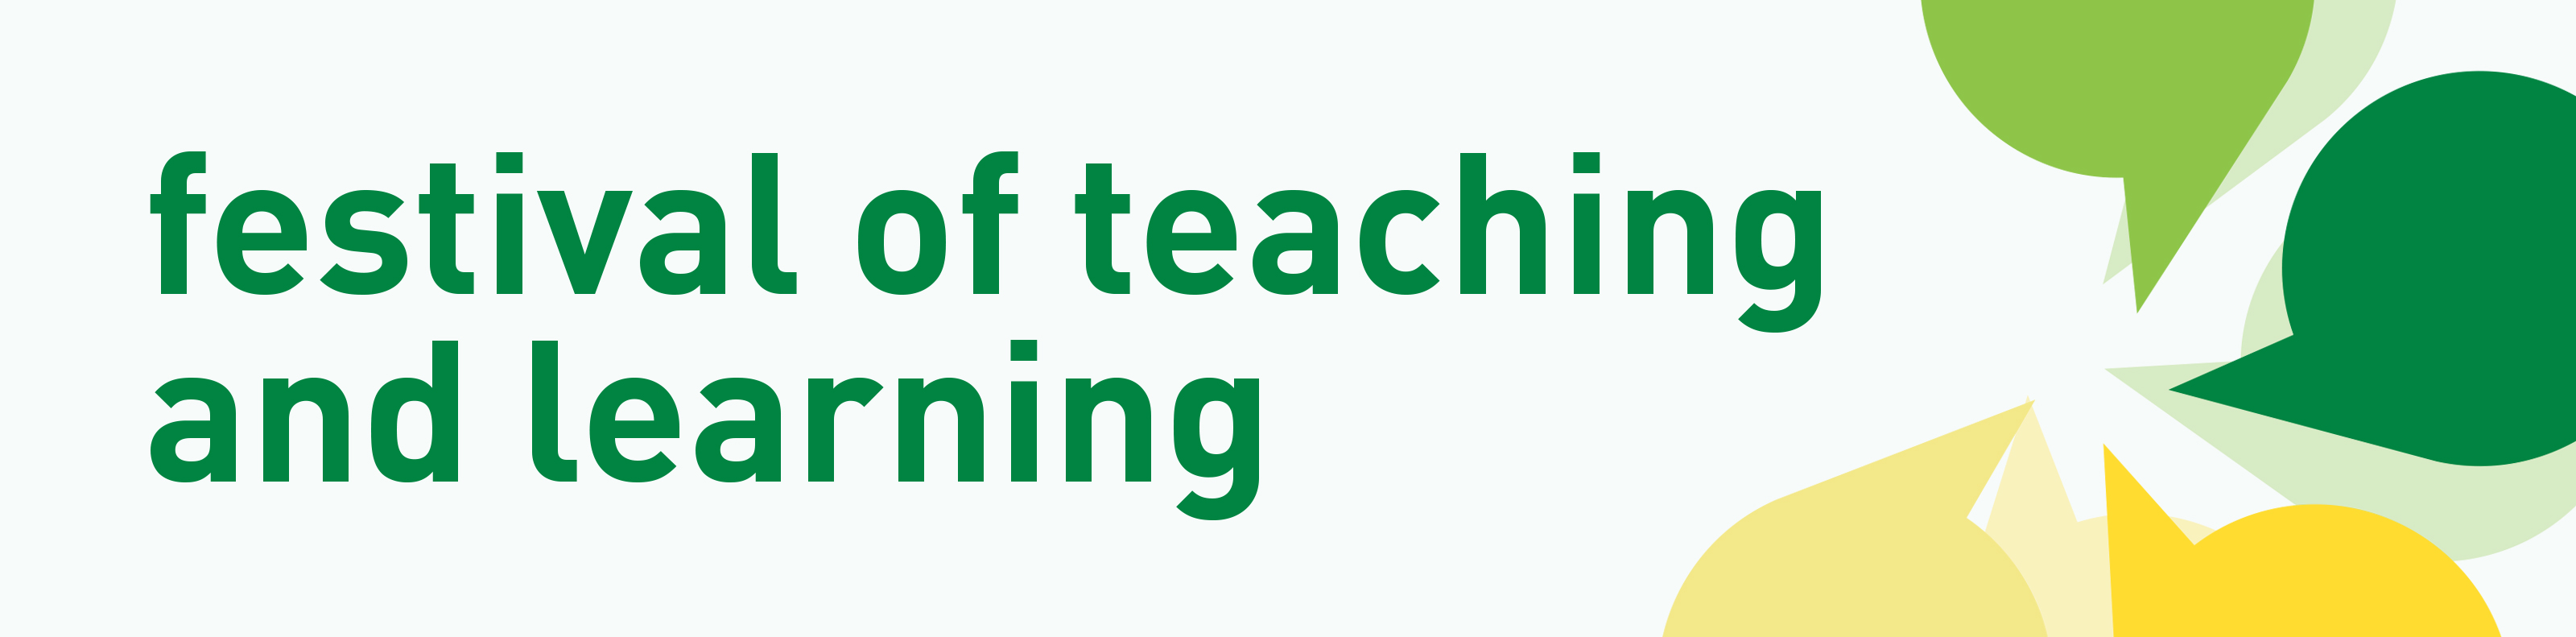 festival-teaching-learning-2020.jpg